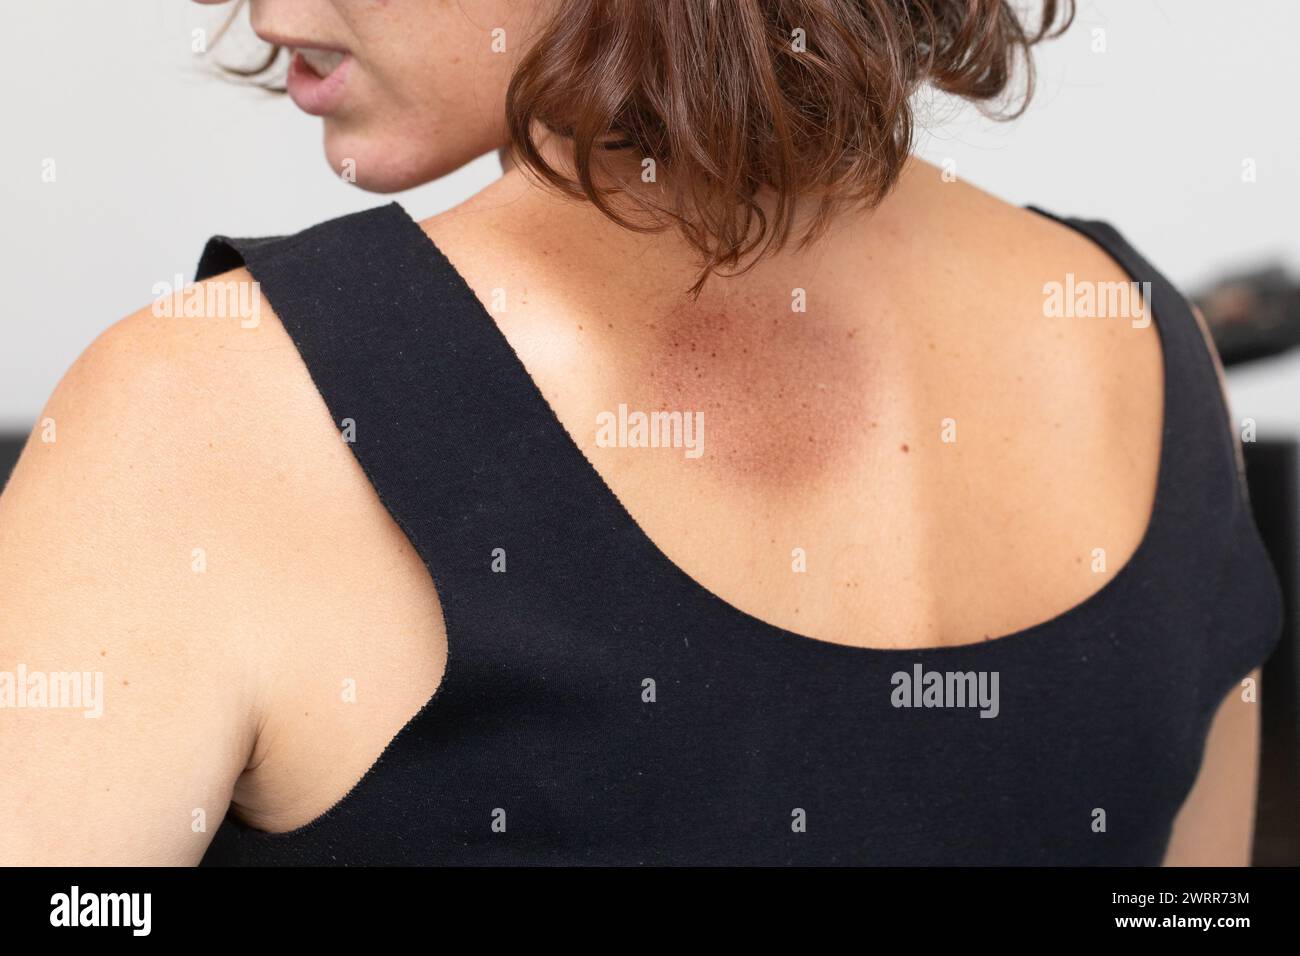 Über-Schulter-Ansicht einer Frau mit dermatologischen Flecken auf ihrer Haut, was auf einen möglichen Hautzustand hindeutet Stockfoto